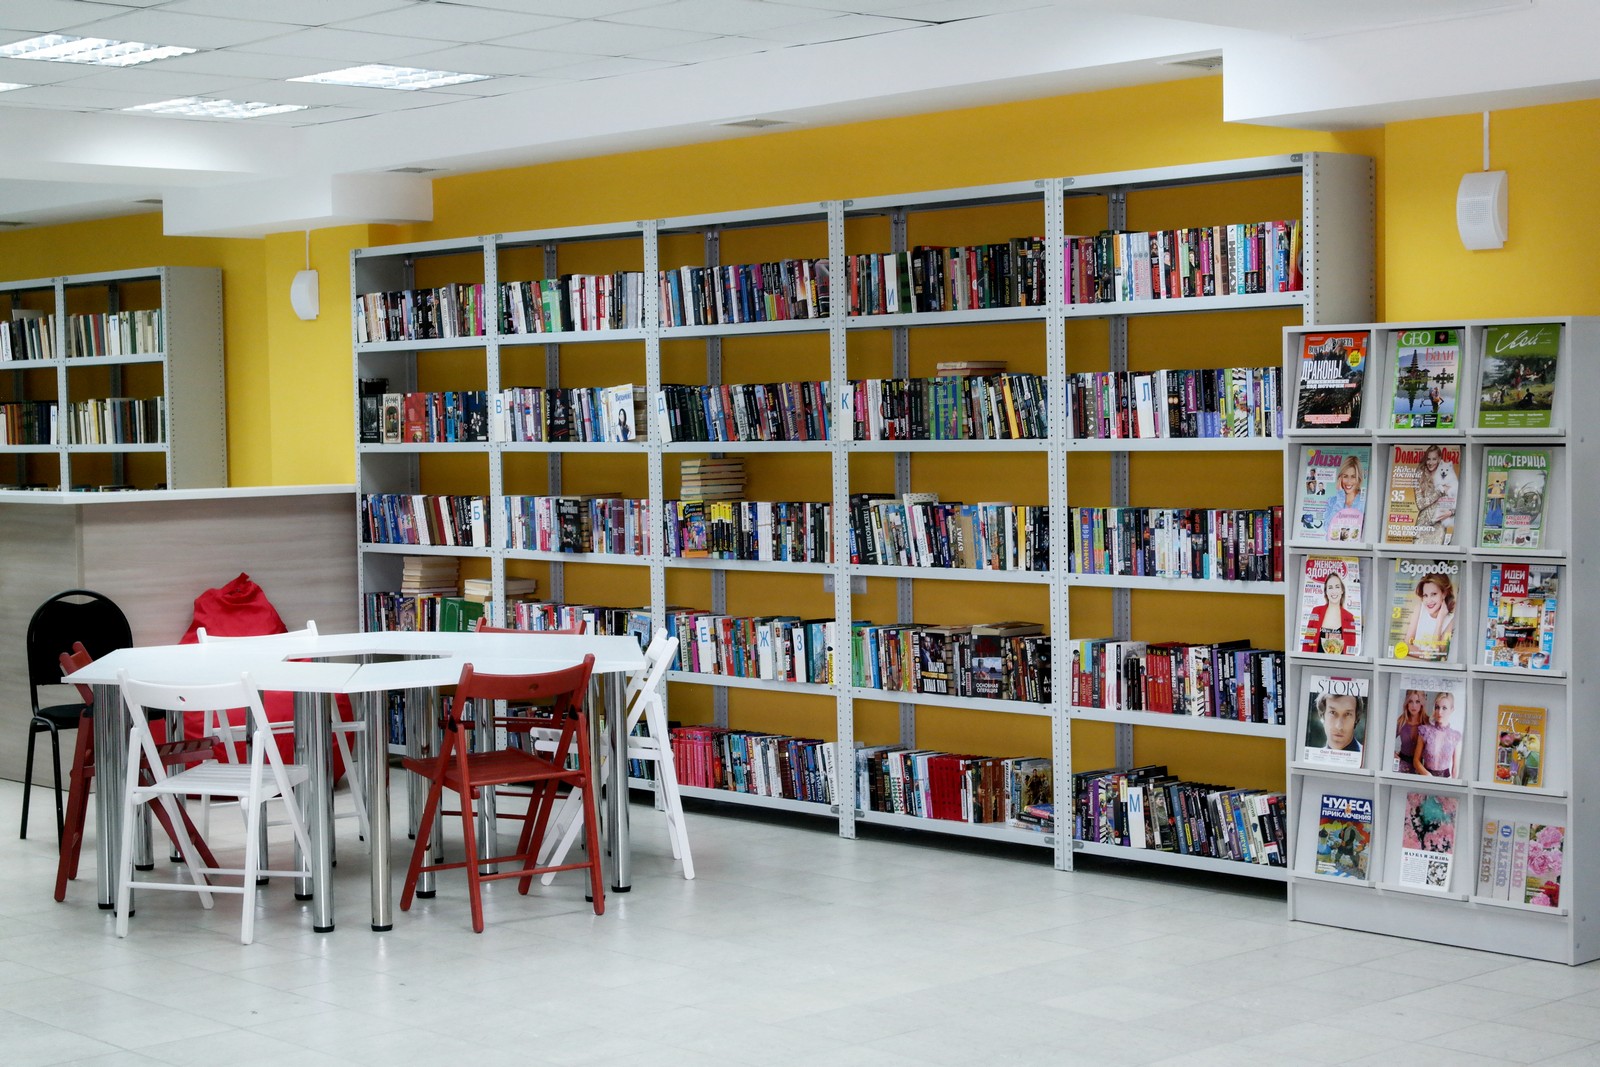 Библиотека информационно образовательных